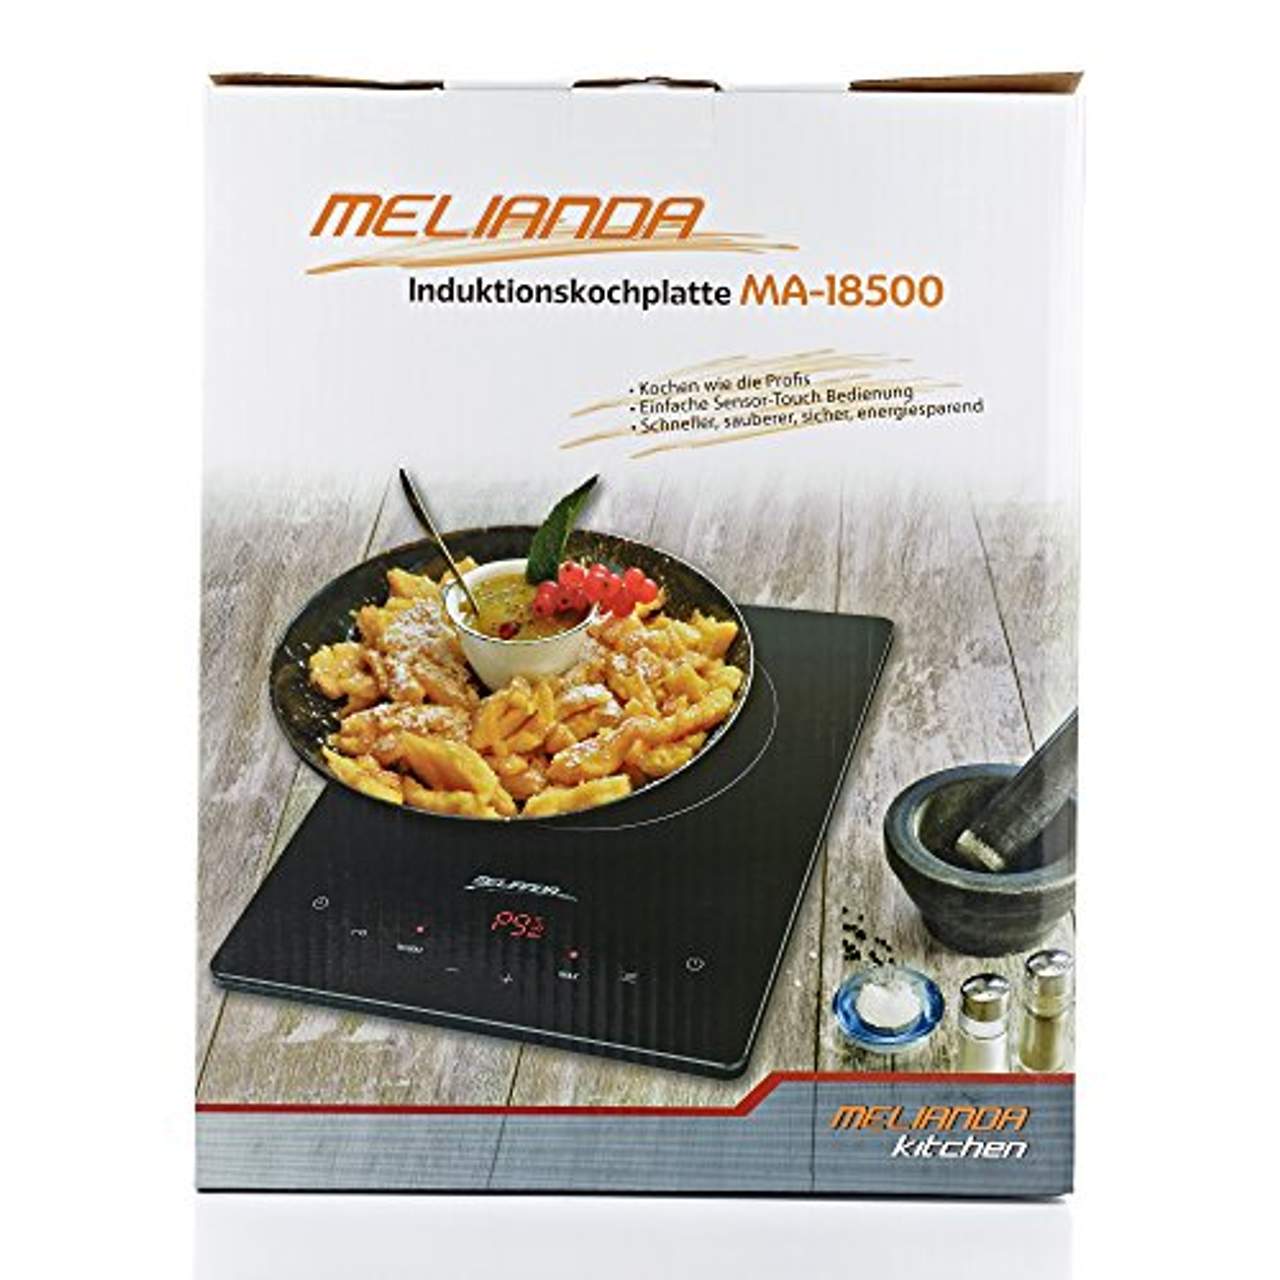 Melianda MA-18500 2000 Watt Induktionsherdplatte Touch Sensoren LED Display Glaskeramik